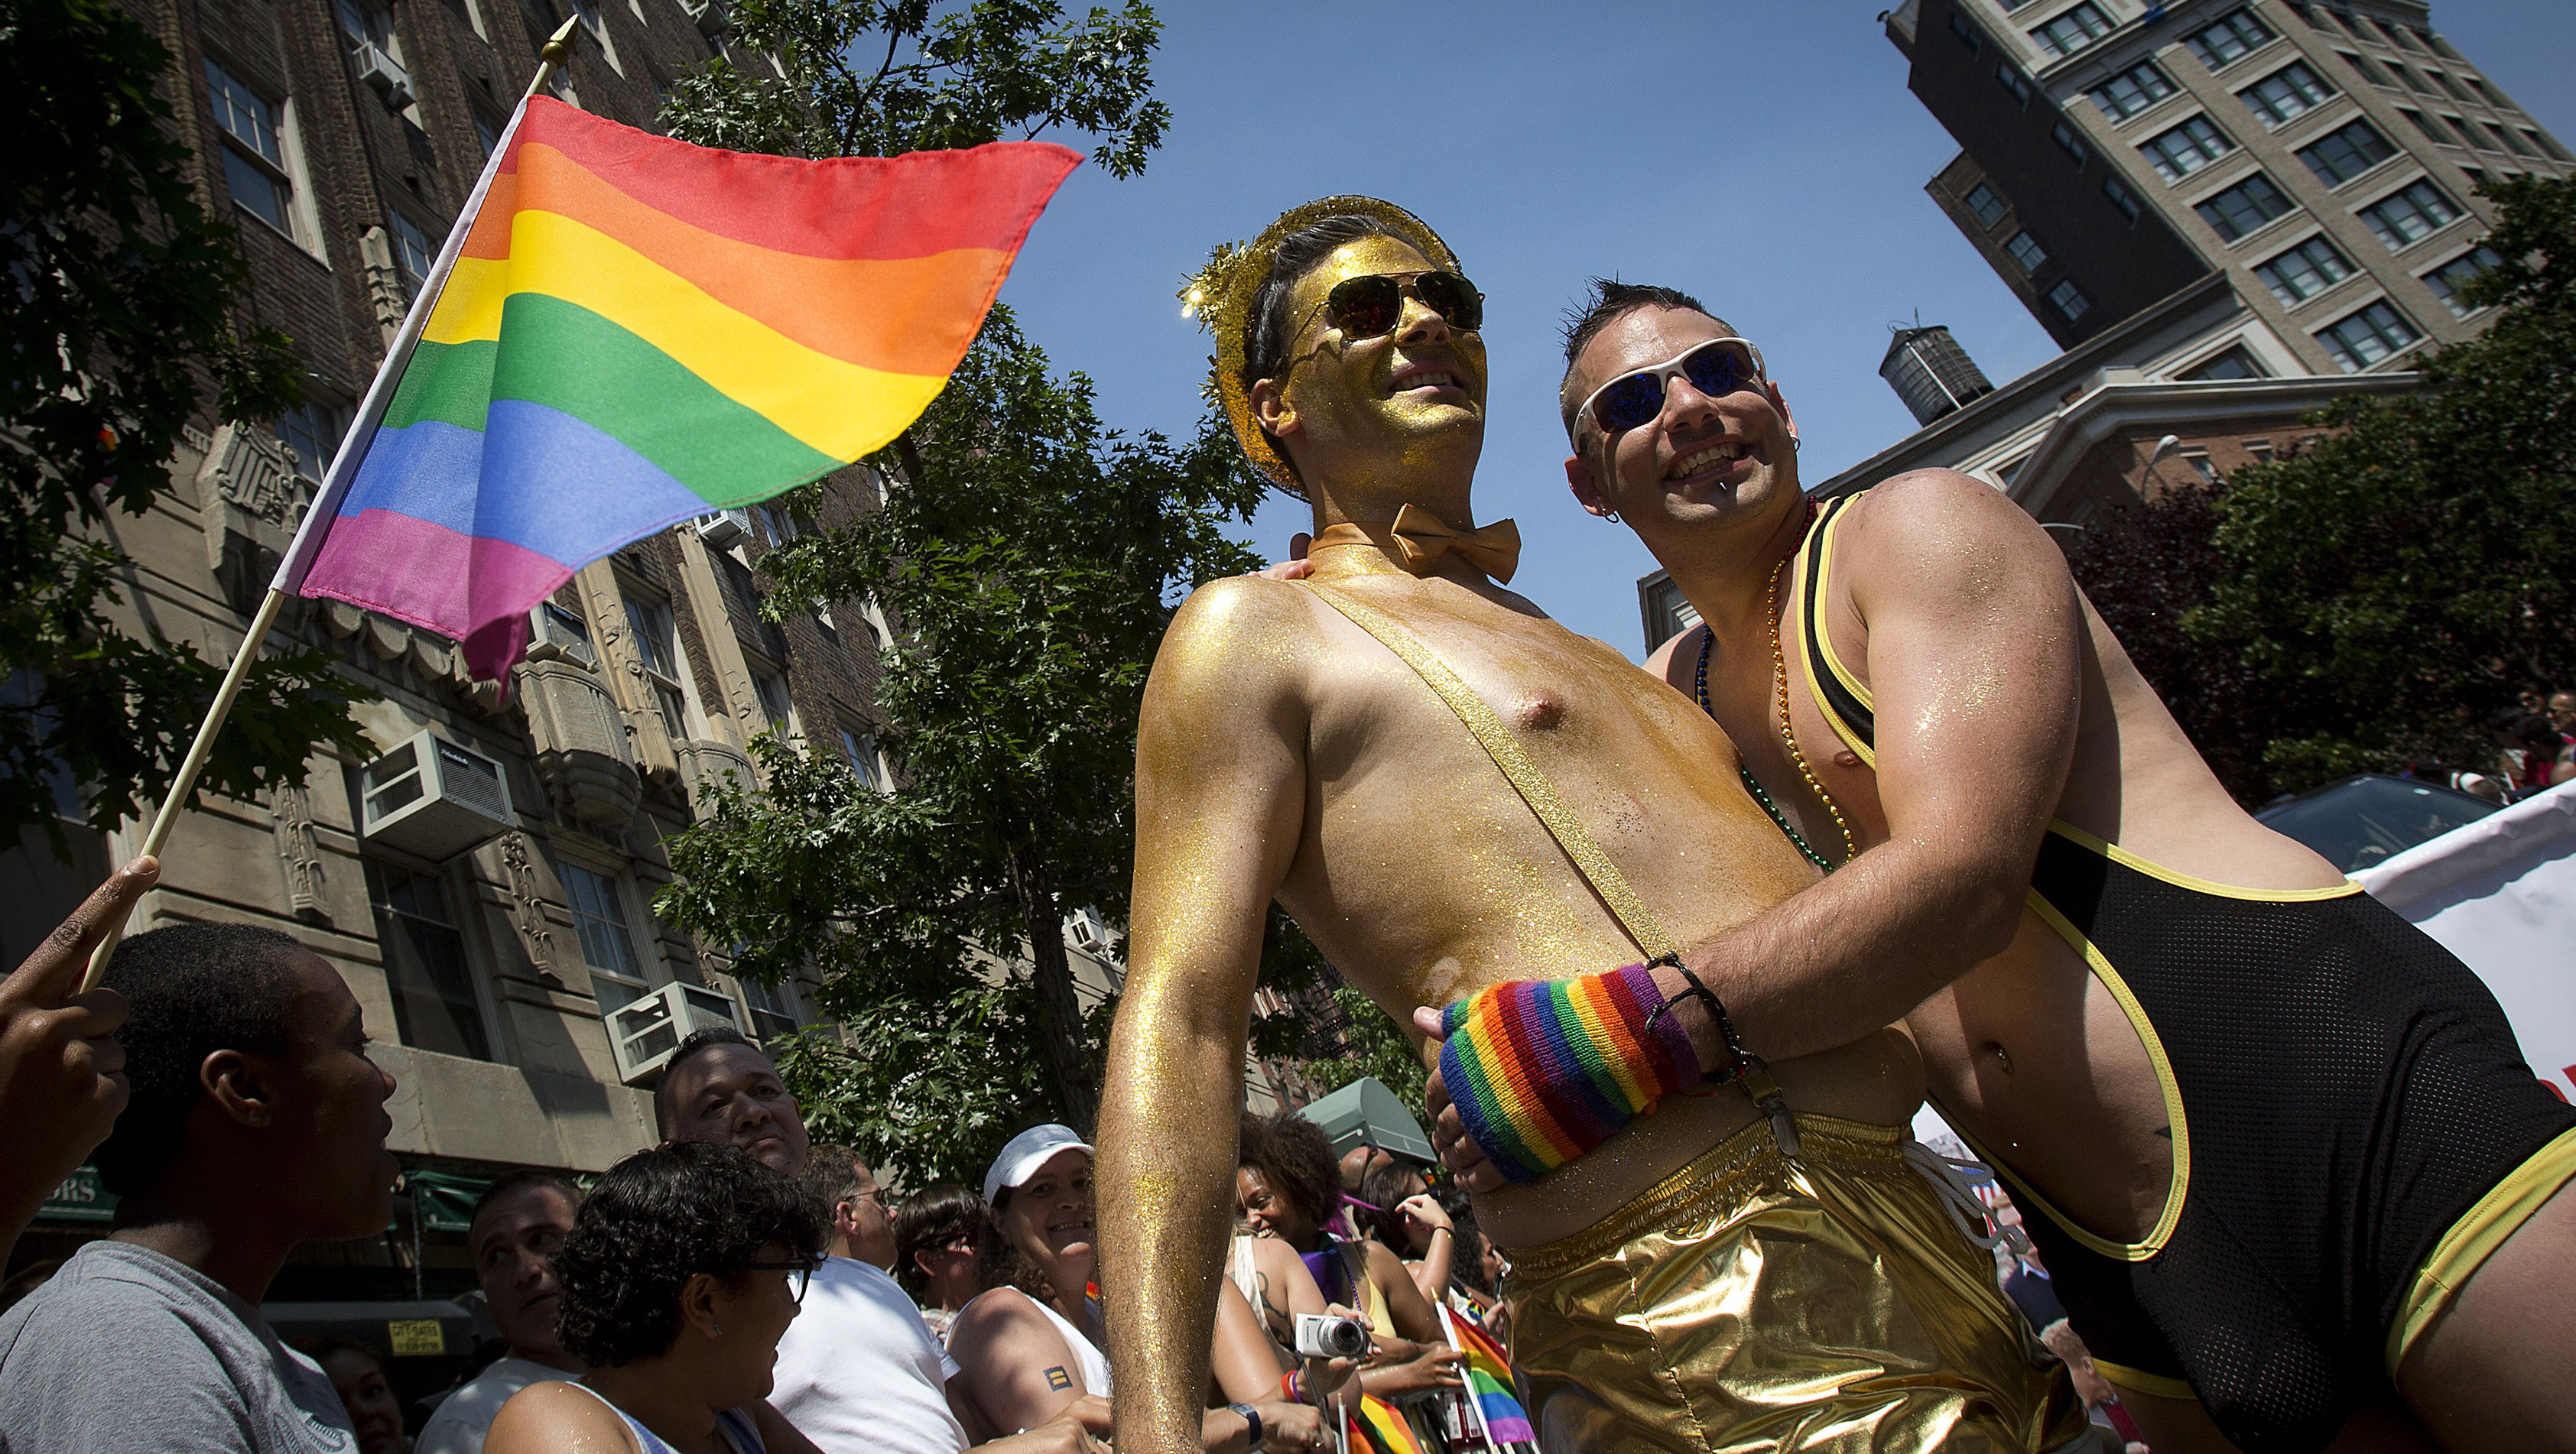 splash bar nyc gay pride parade float